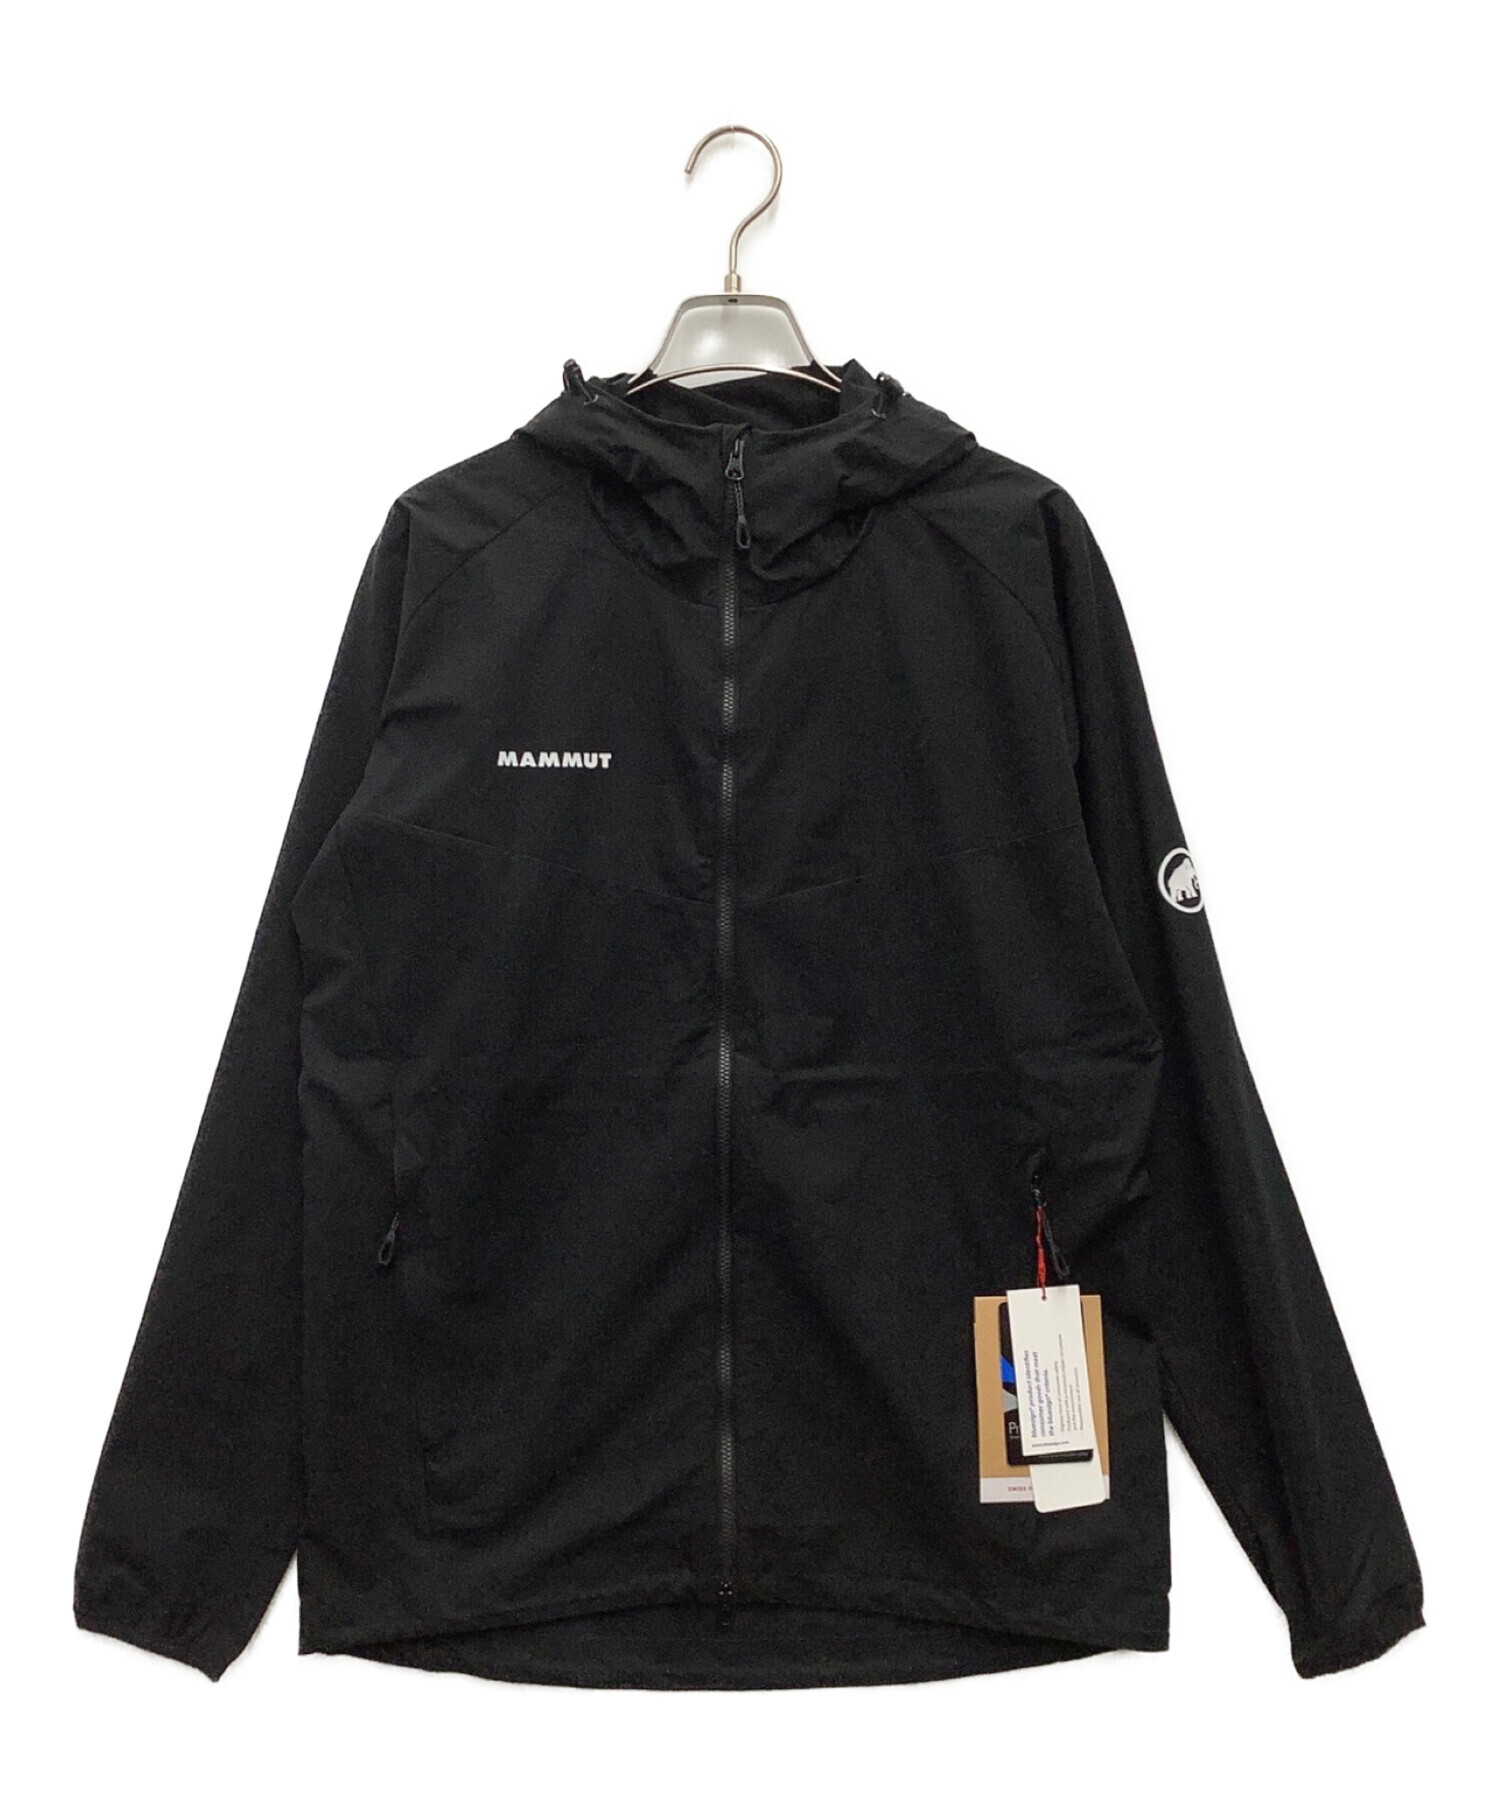 MAMMUT (マムート) Granite So Hooded Jacket ブラック サイズ:L 未使用品